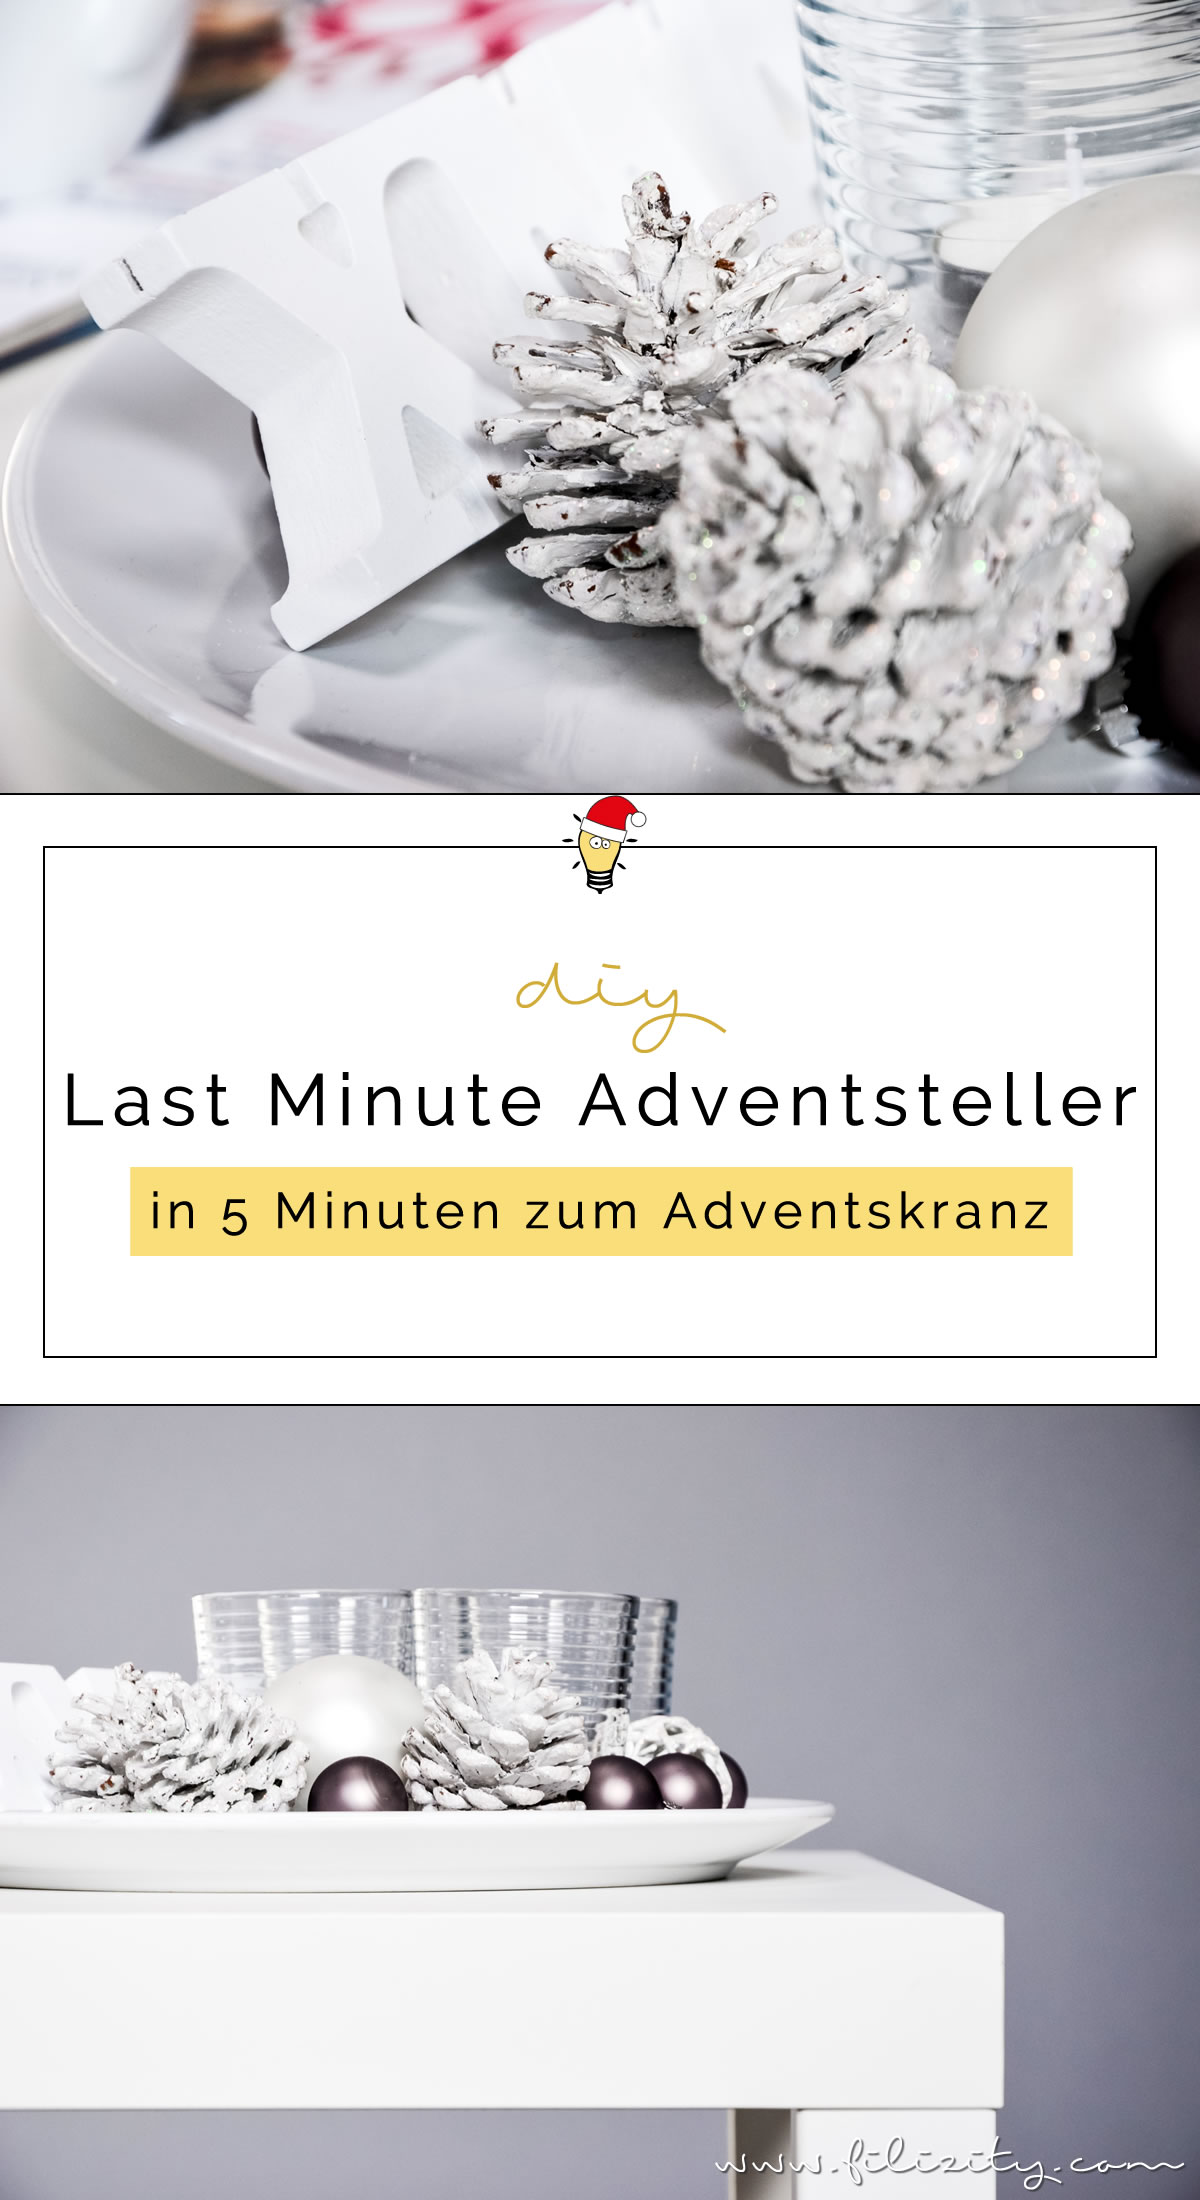 Last Minute Adventsteller – In 5 Minuten zum Adventskranz - Weihnachtsdeko | Filizity.com | DIY-Blog aus dem Rheinland #weihnachten #deko #adventskranz